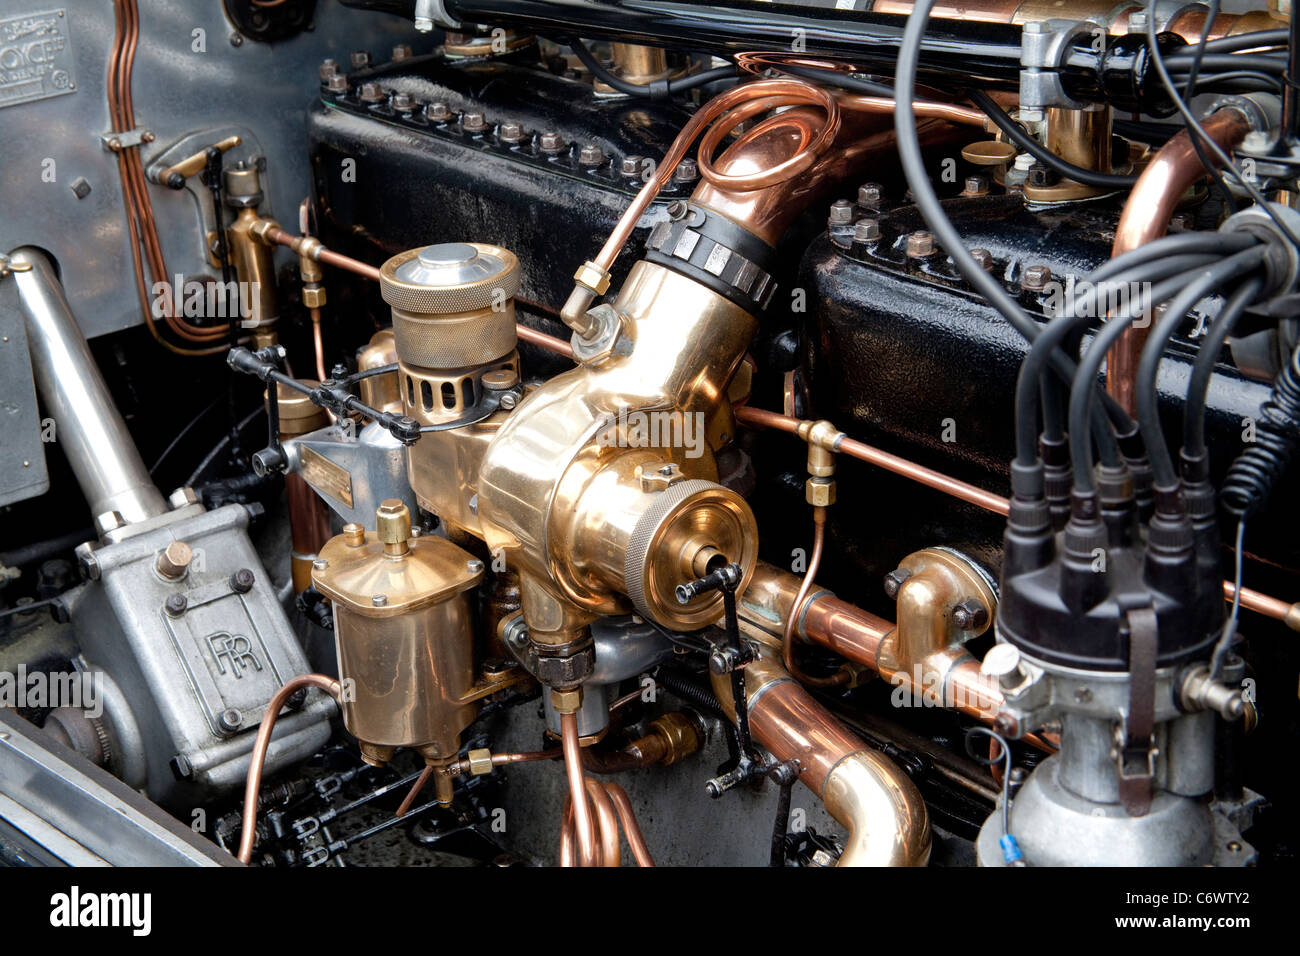 Classiques sur la politique commune d'Harpenden 2011 Rolls Royce moteur de voiture classique Banque D'Images